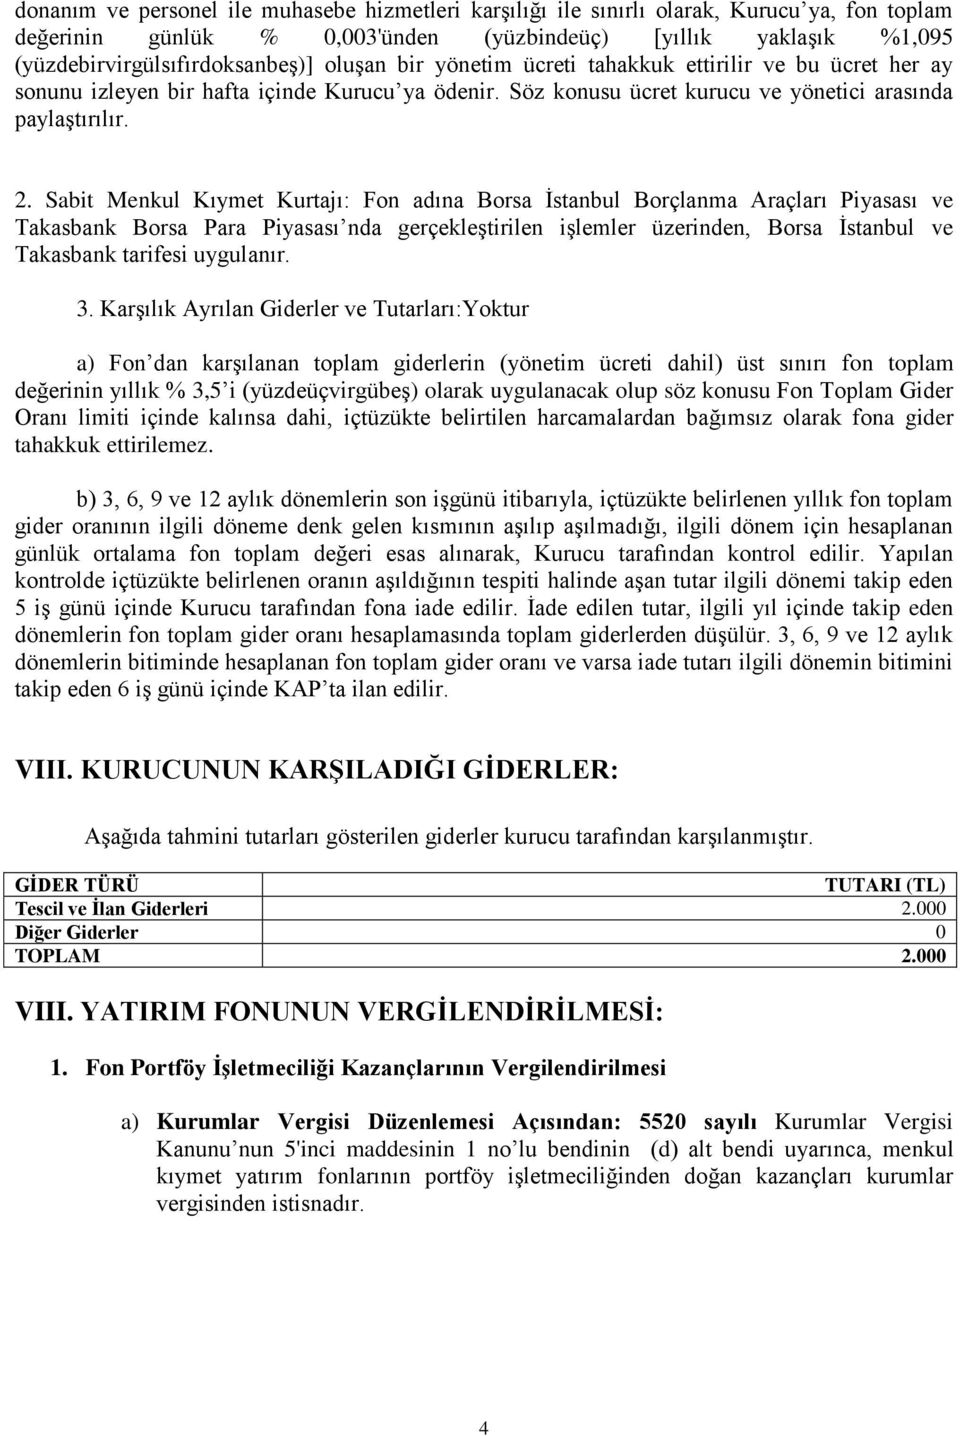 Sabit Menkul Kıymet Kurtajı: Fon adına Borsa İstanbul Borçlanma Araçları Piyasası ve Takasbank Borsa Para Piyasası nda gerçekleştirilen işlemler üzerinden, Borsa İstanbul ve Takasbank tarifesi